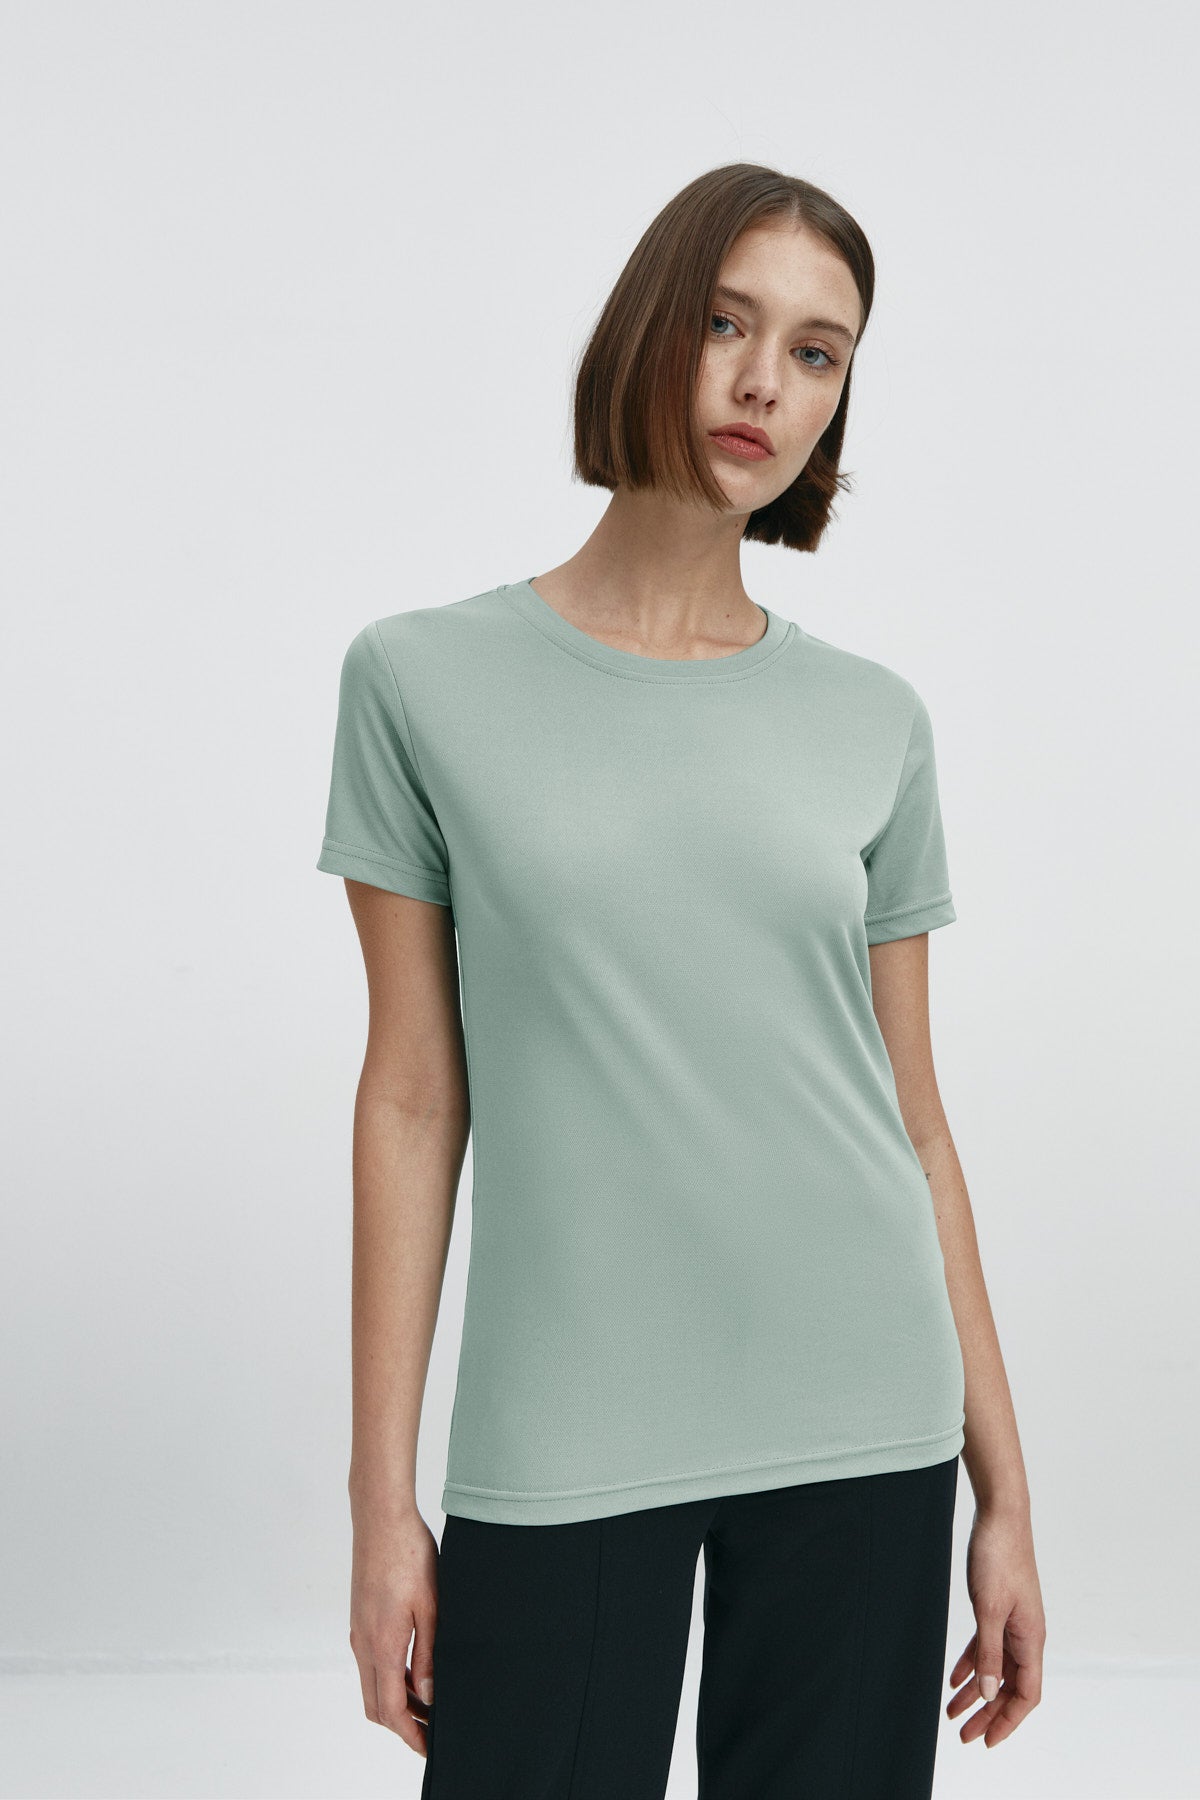 Camiseta básica de mujer verde cuarzo de manga corta y cuello redondo, perfecta para cualquier look. Foto frente